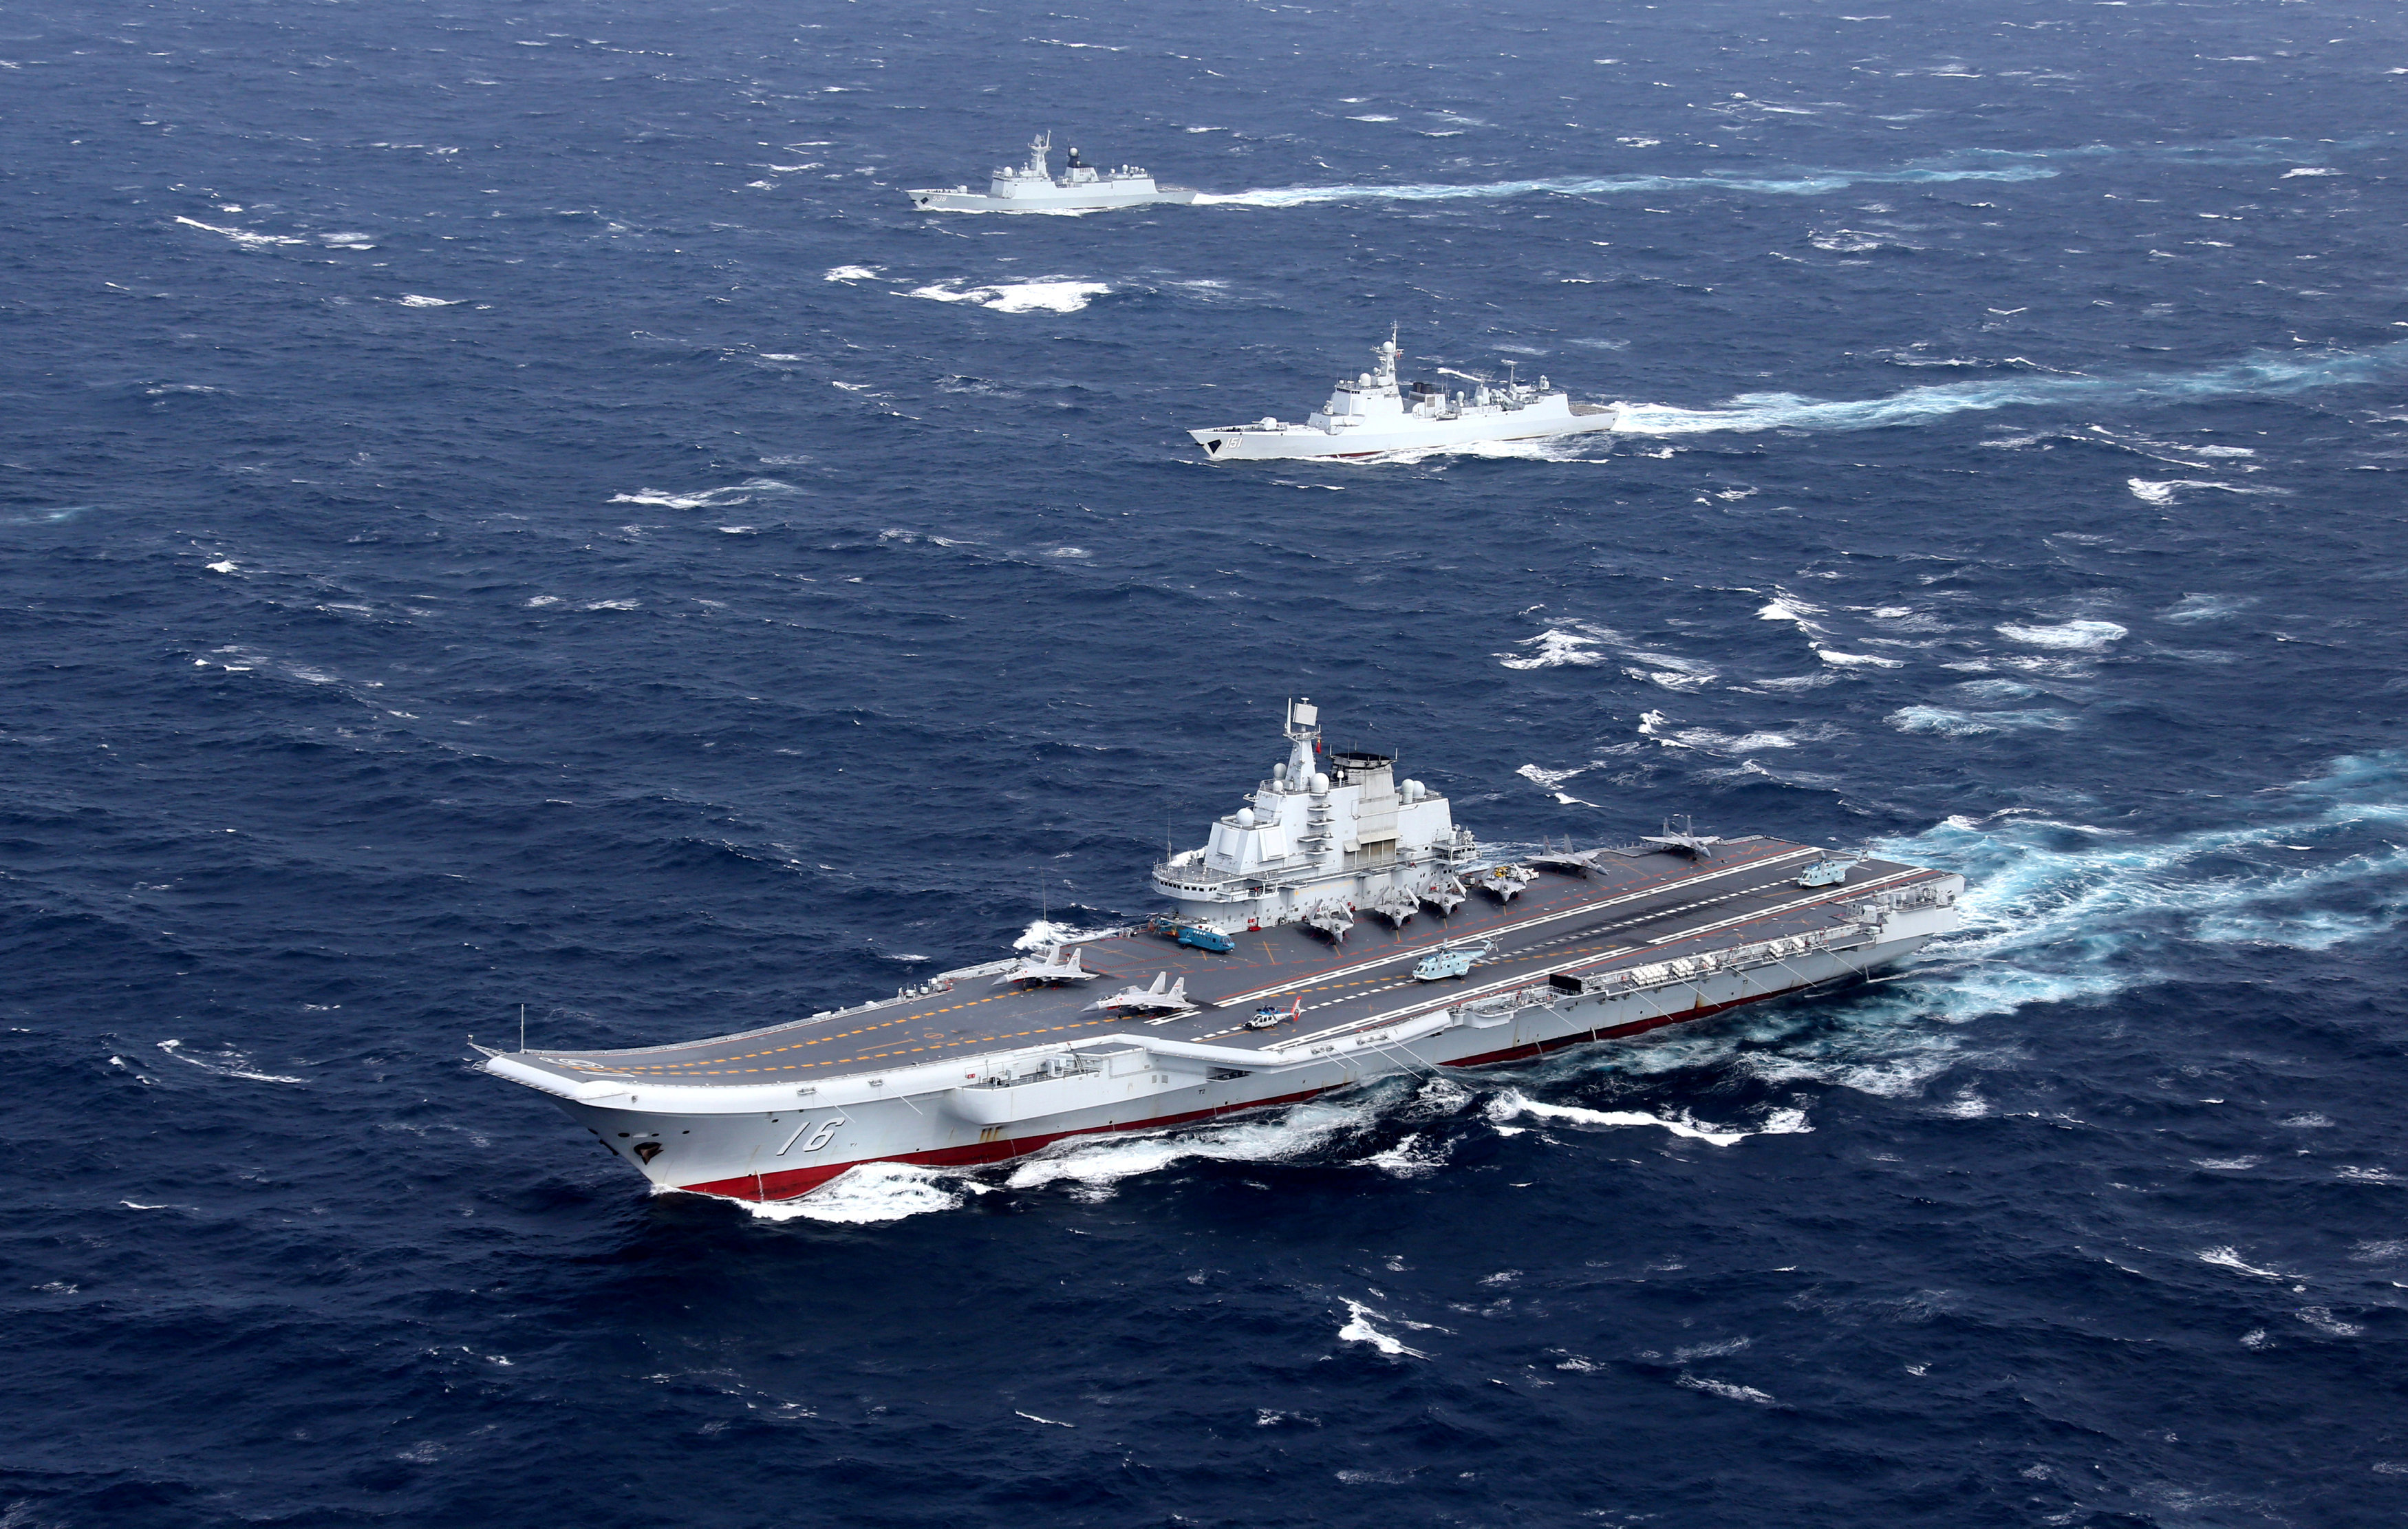 假如中美两国开战,中国航母有多少优势?不是老美舰载机多就厉害